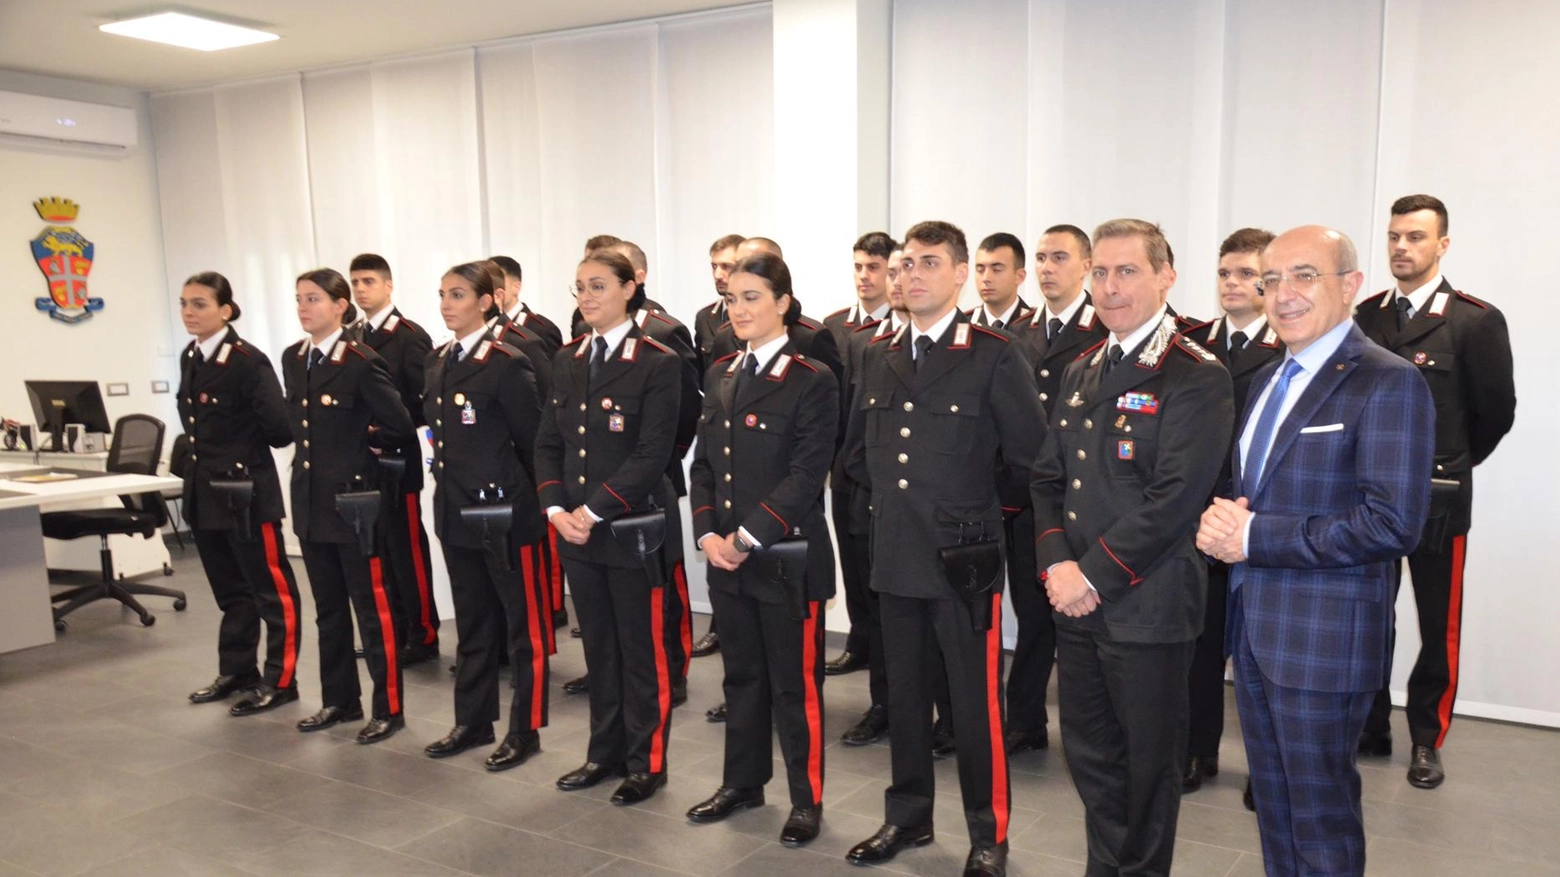 Rinforzi al comando provinciale. Arrivano 80 nuovi carabinieri